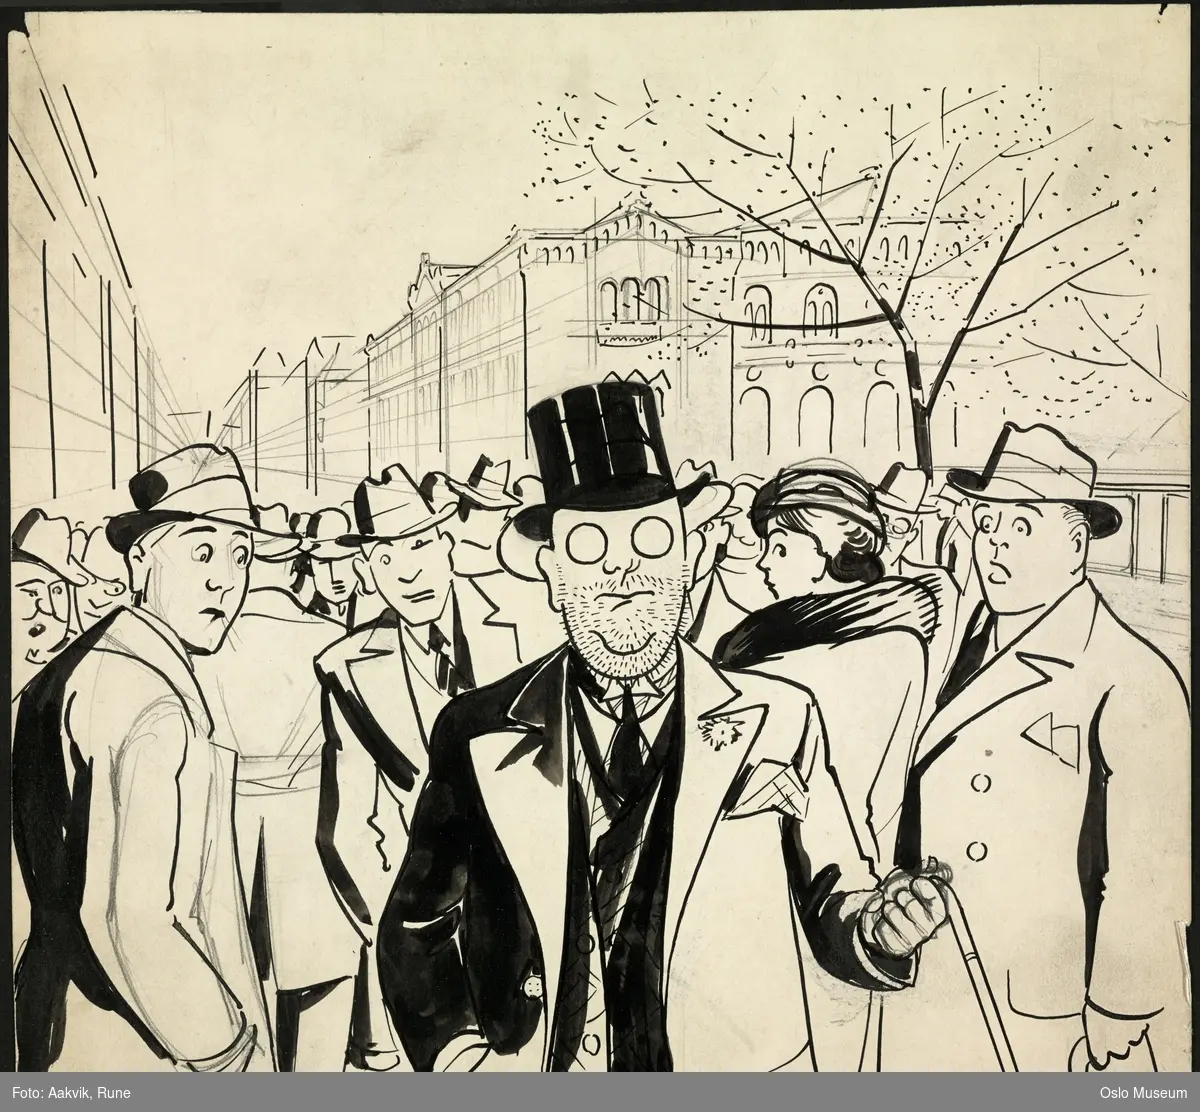 Menneskemengde, menn med hatt, sentral figur er Lilleborgmannen med snipp og flosshatt, Storingsbygningen bak